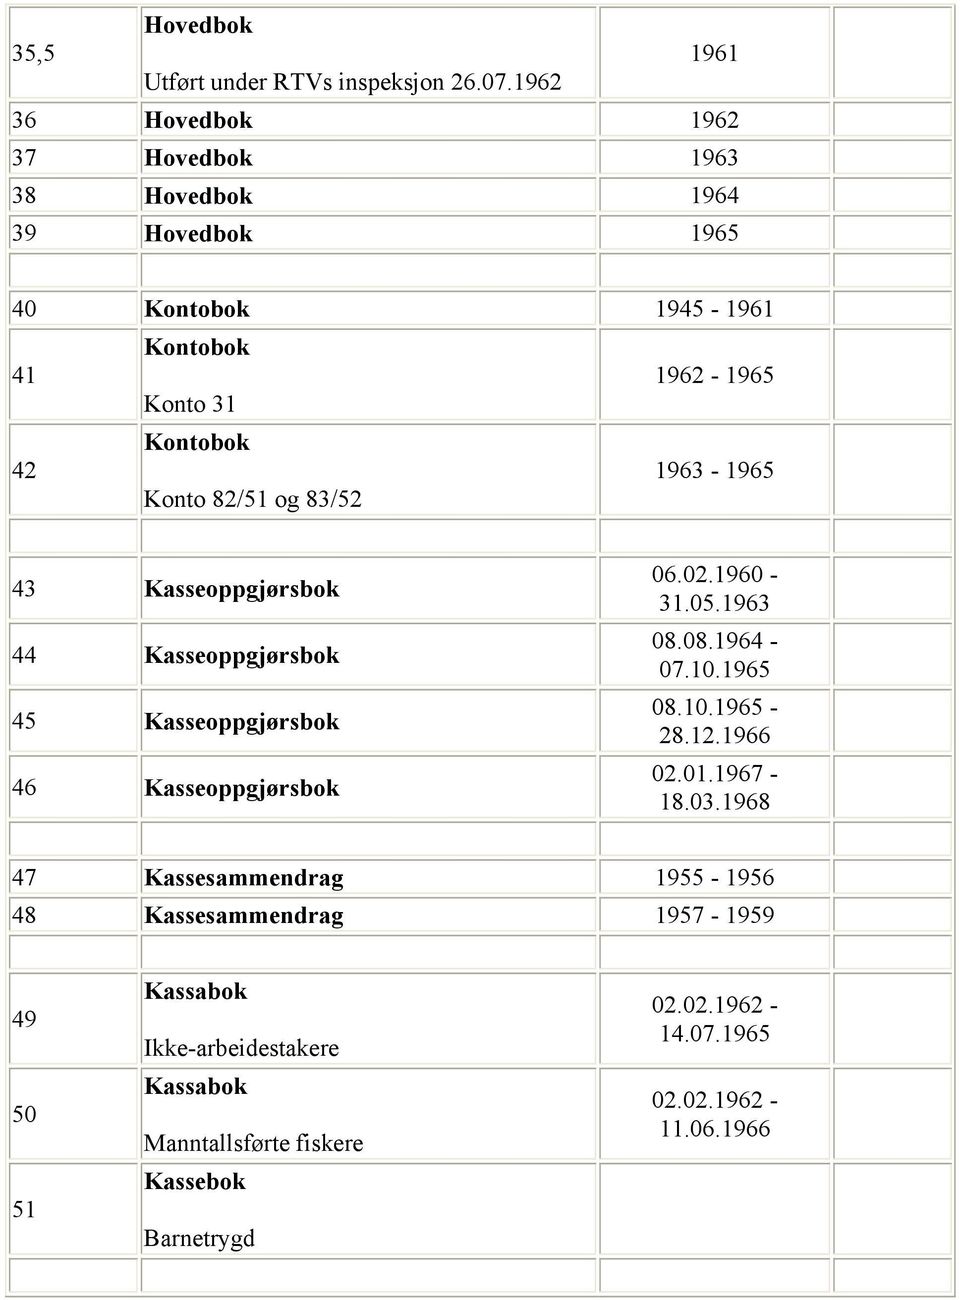 1963-1965 Konto 82/51 og 83/52 43 Kasseoppgjørsbok 44 Kasseoppgjørsbok 45 Kasseoppgjørsbok 46 Kasseoppgjørsbok 06.02.1960-31.05.1963 08.08.1964-07.